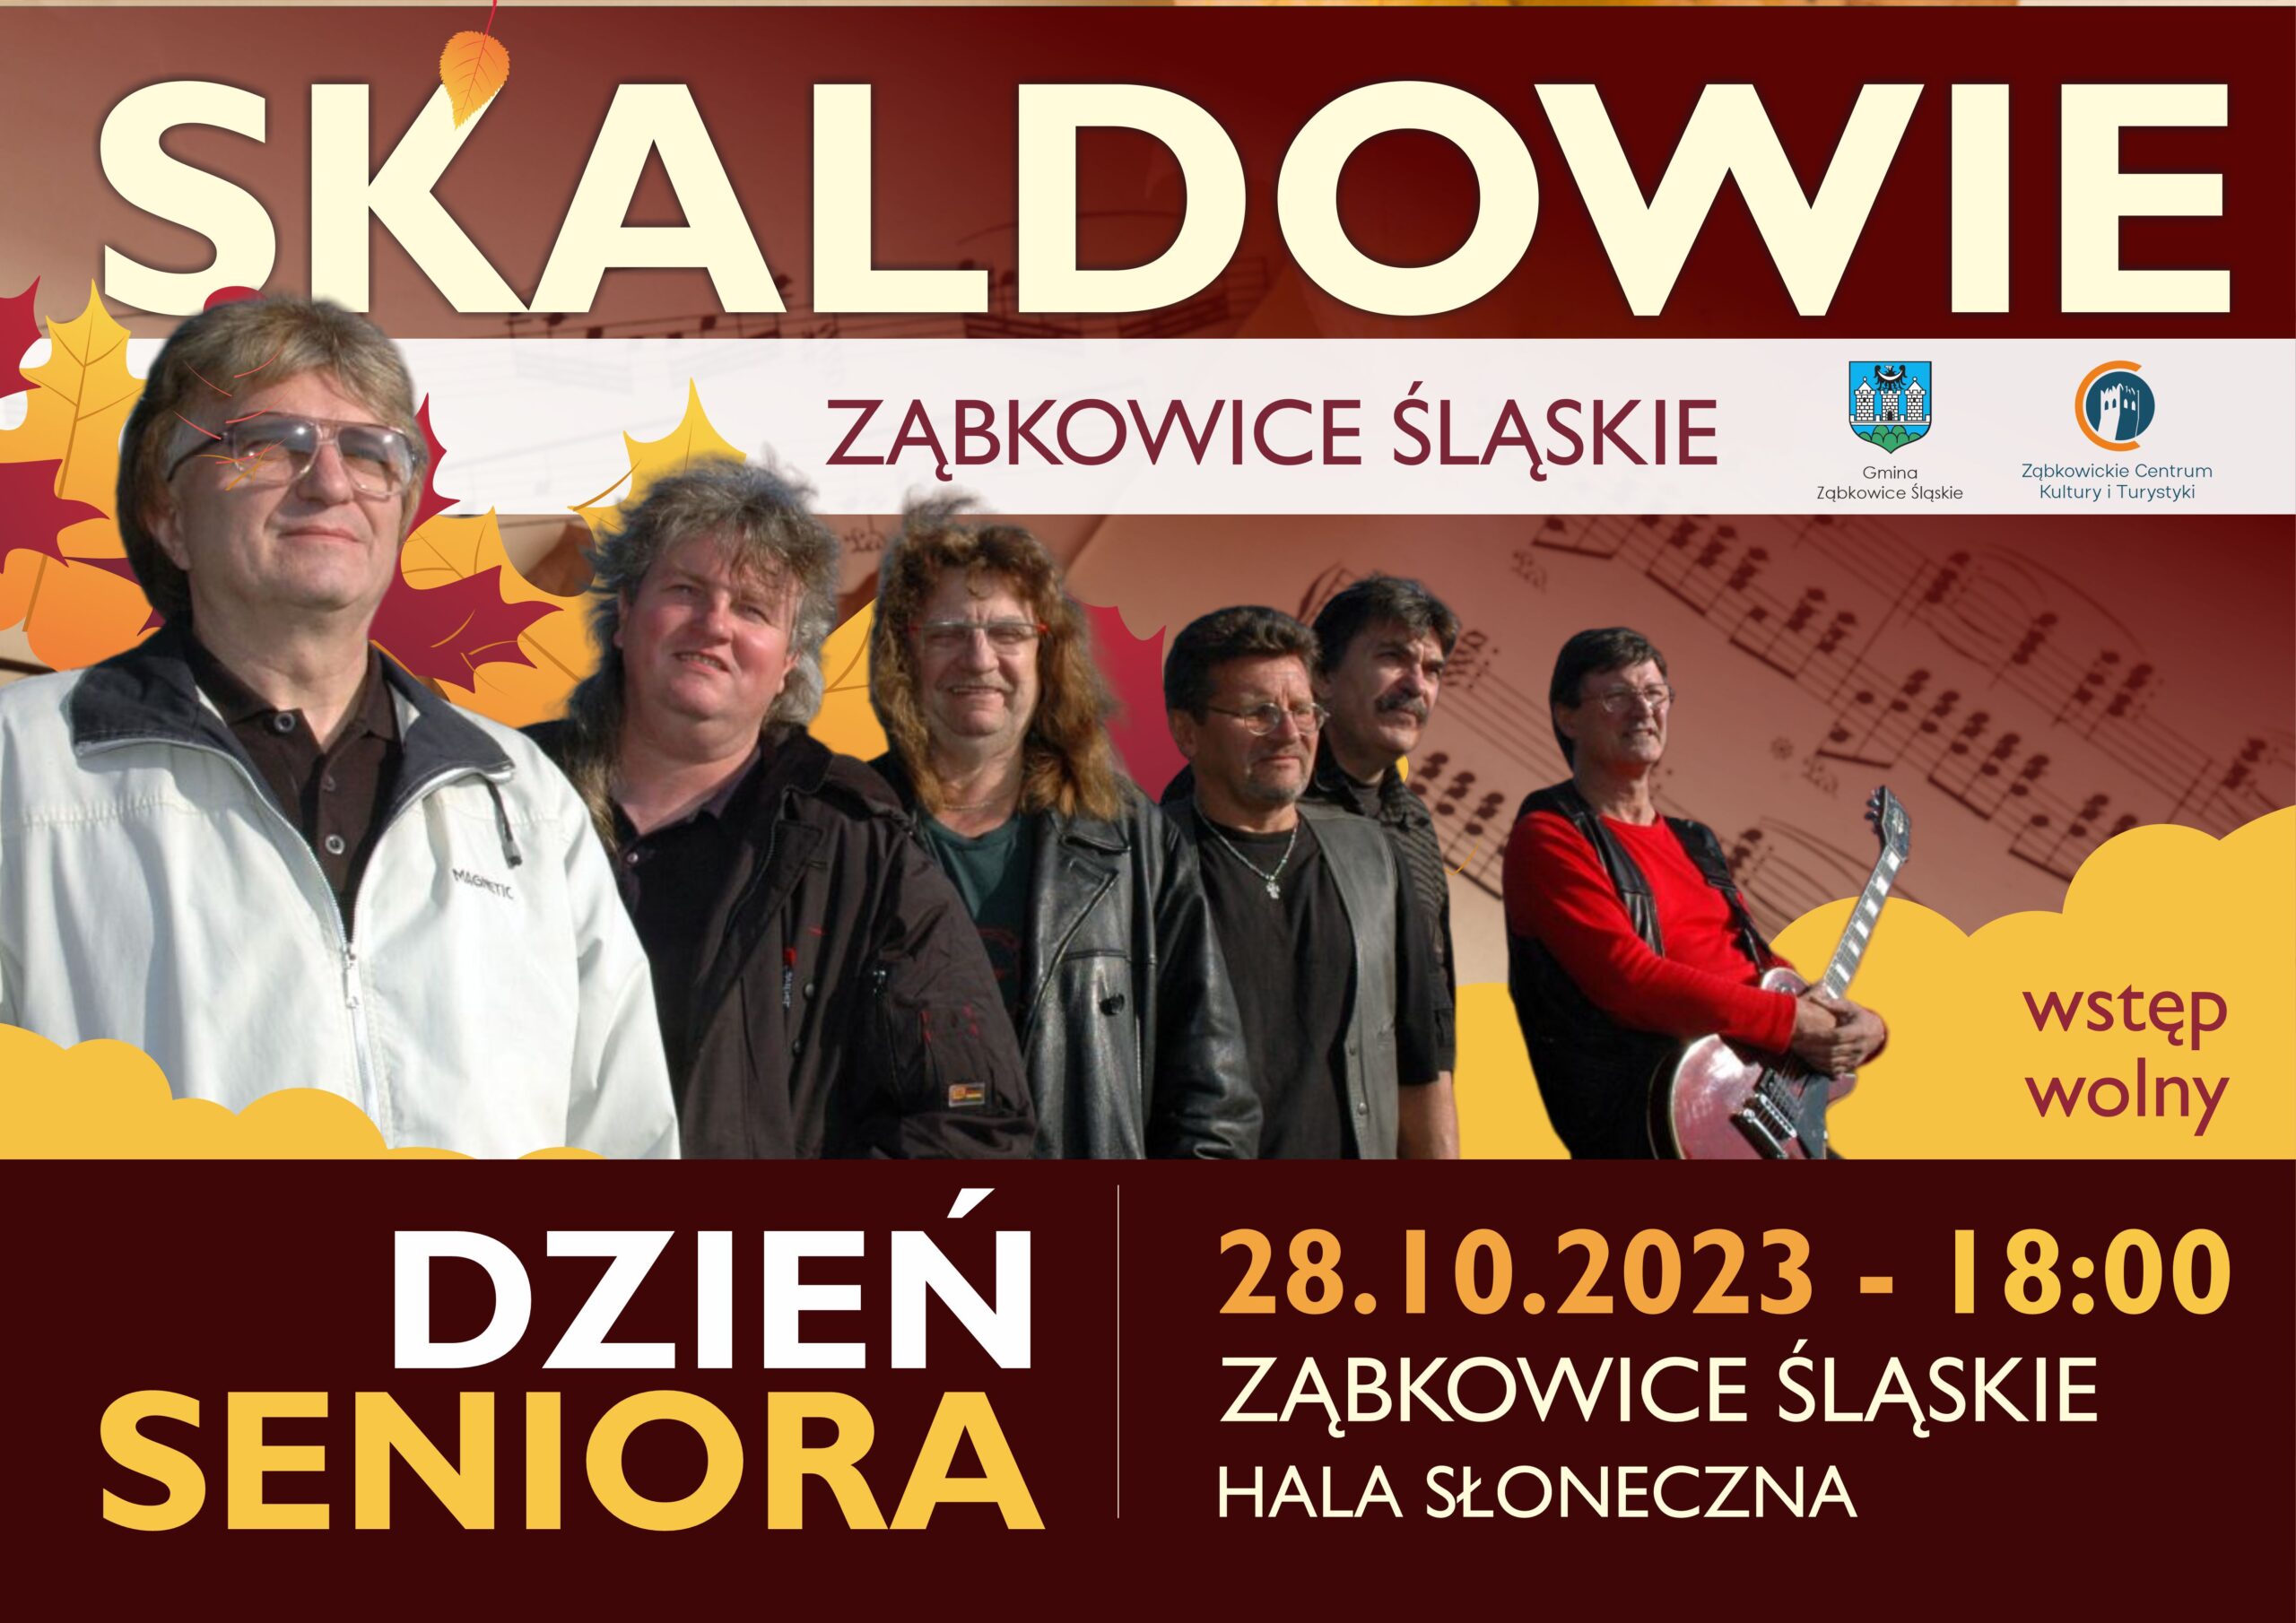 Plakat informacyjny o koncercie zespołu Skaldowie z okazji Dnia Seniora w Ząbkowicach Śląskich 28 października 2023 o godzinie 18:00. Na plakacie znajduje się zdjęcie zespołu.